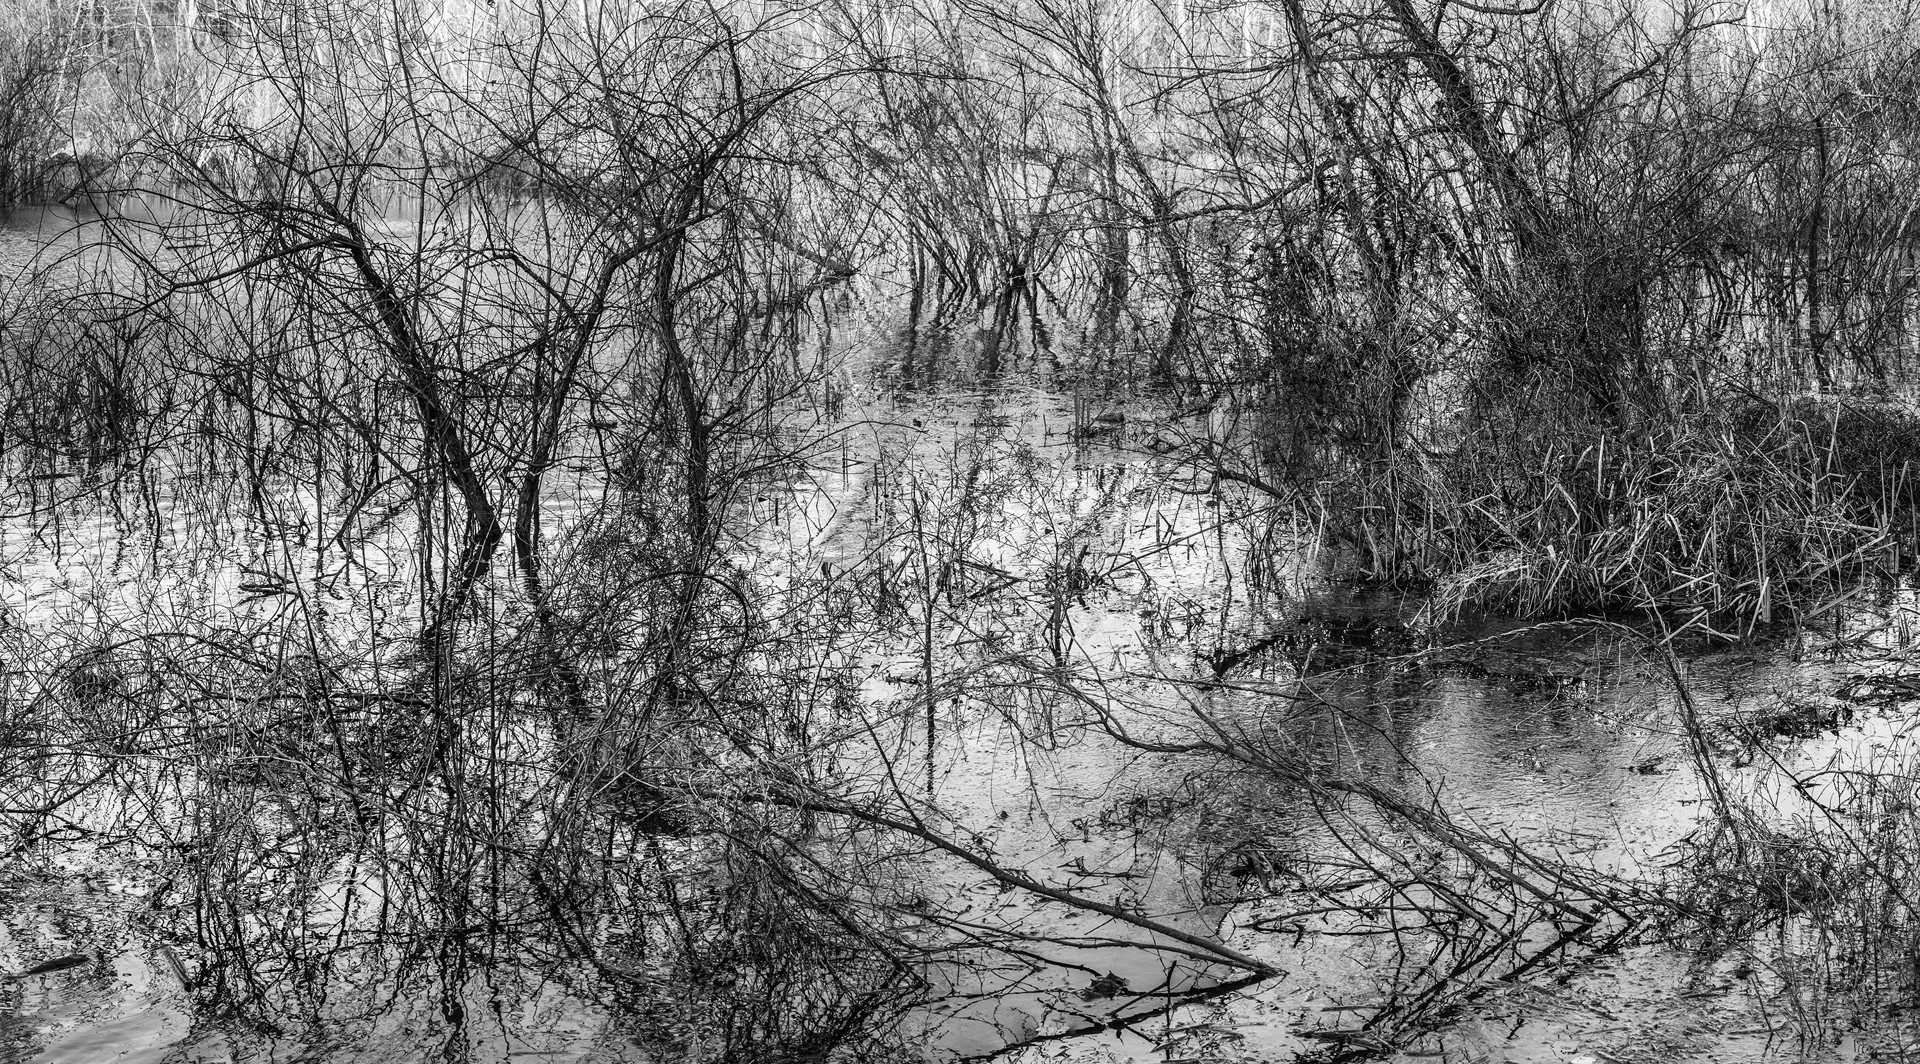 River Etching by Richard Skoonberg